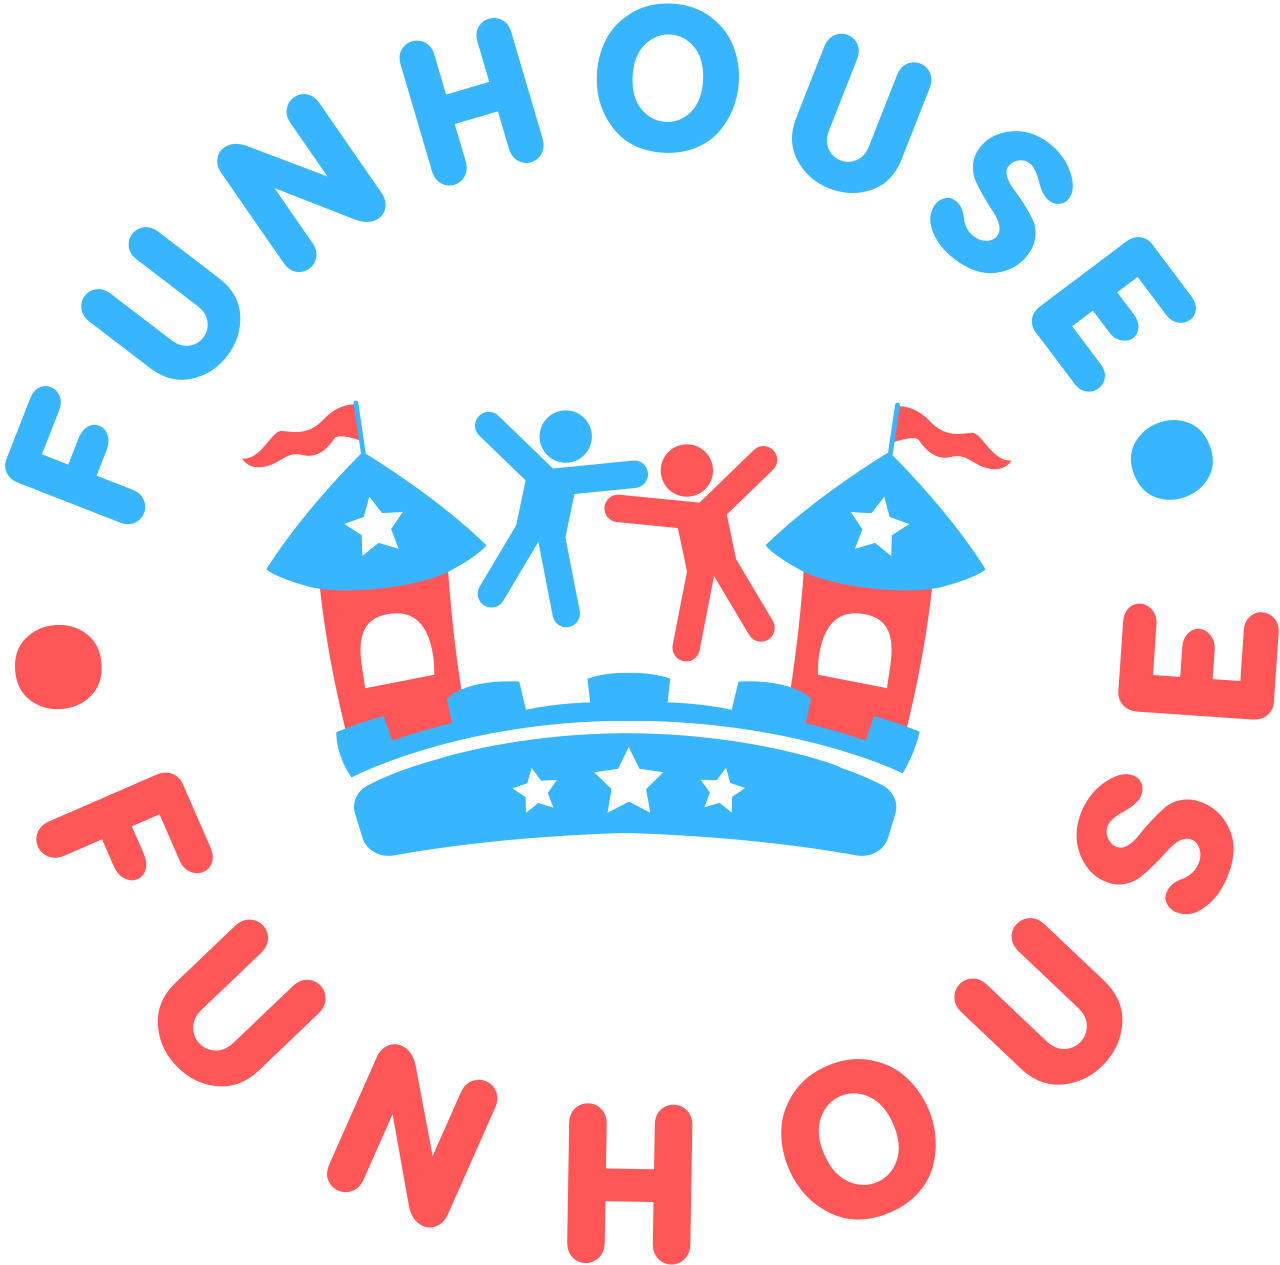 Funhouse's logo